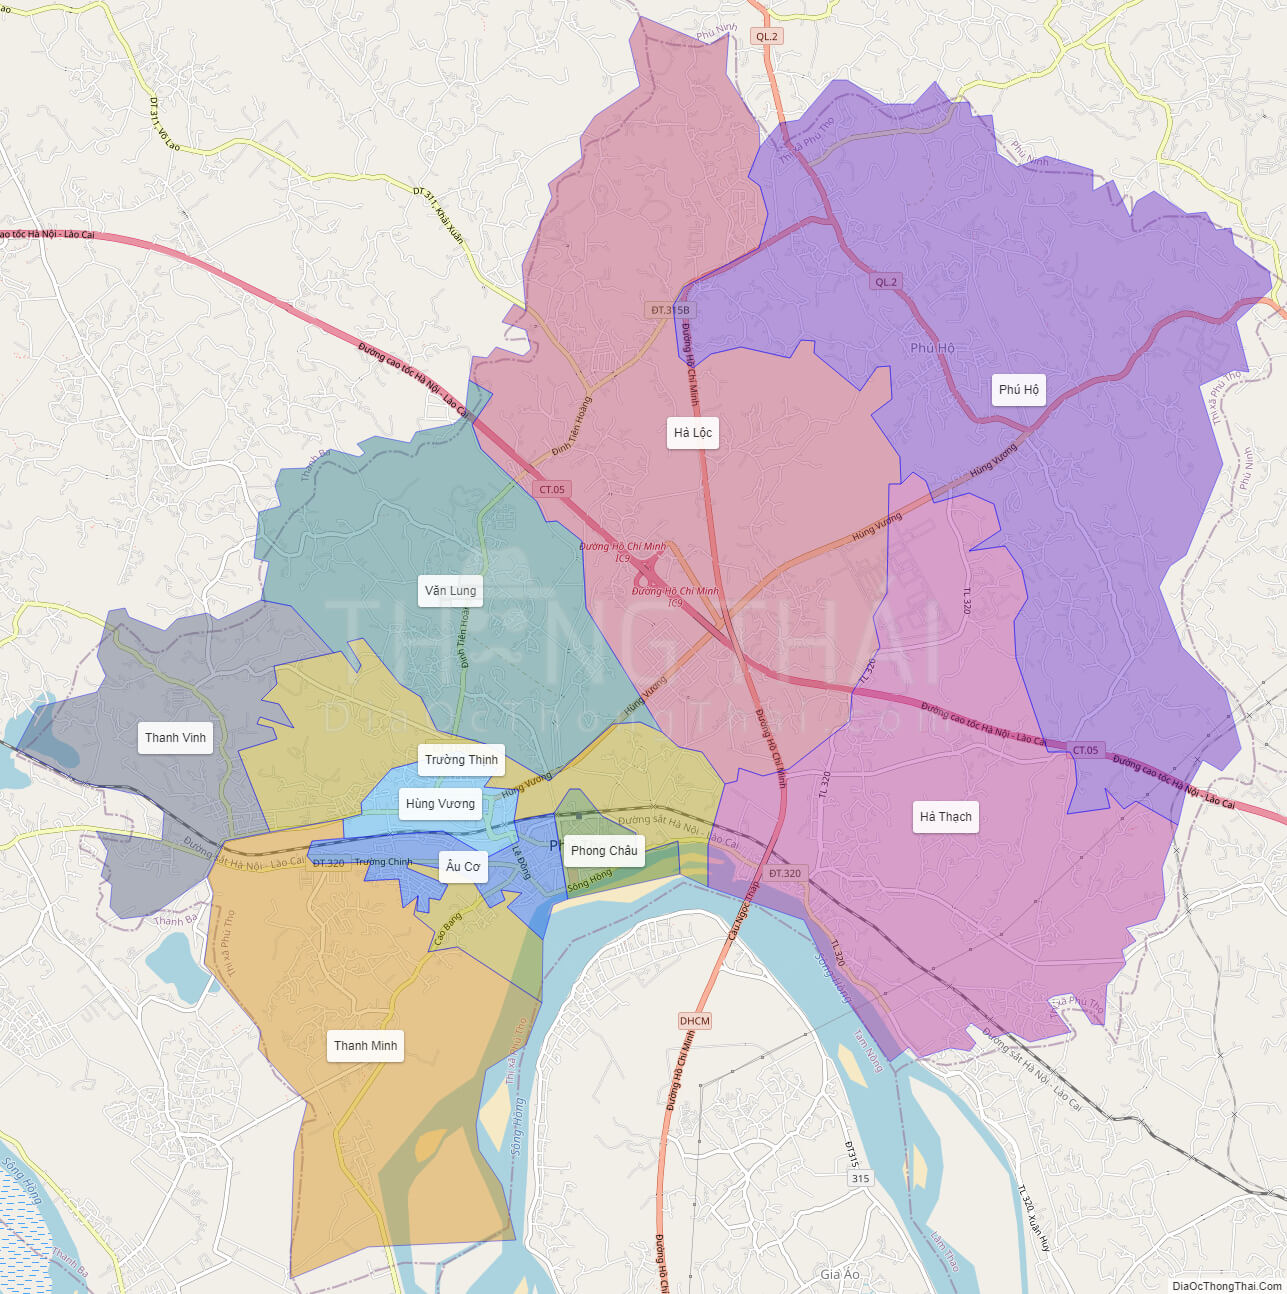 Bản đồ hành chính thị xã Phú Thọ hiện nay có cập nhật mới nhất không?